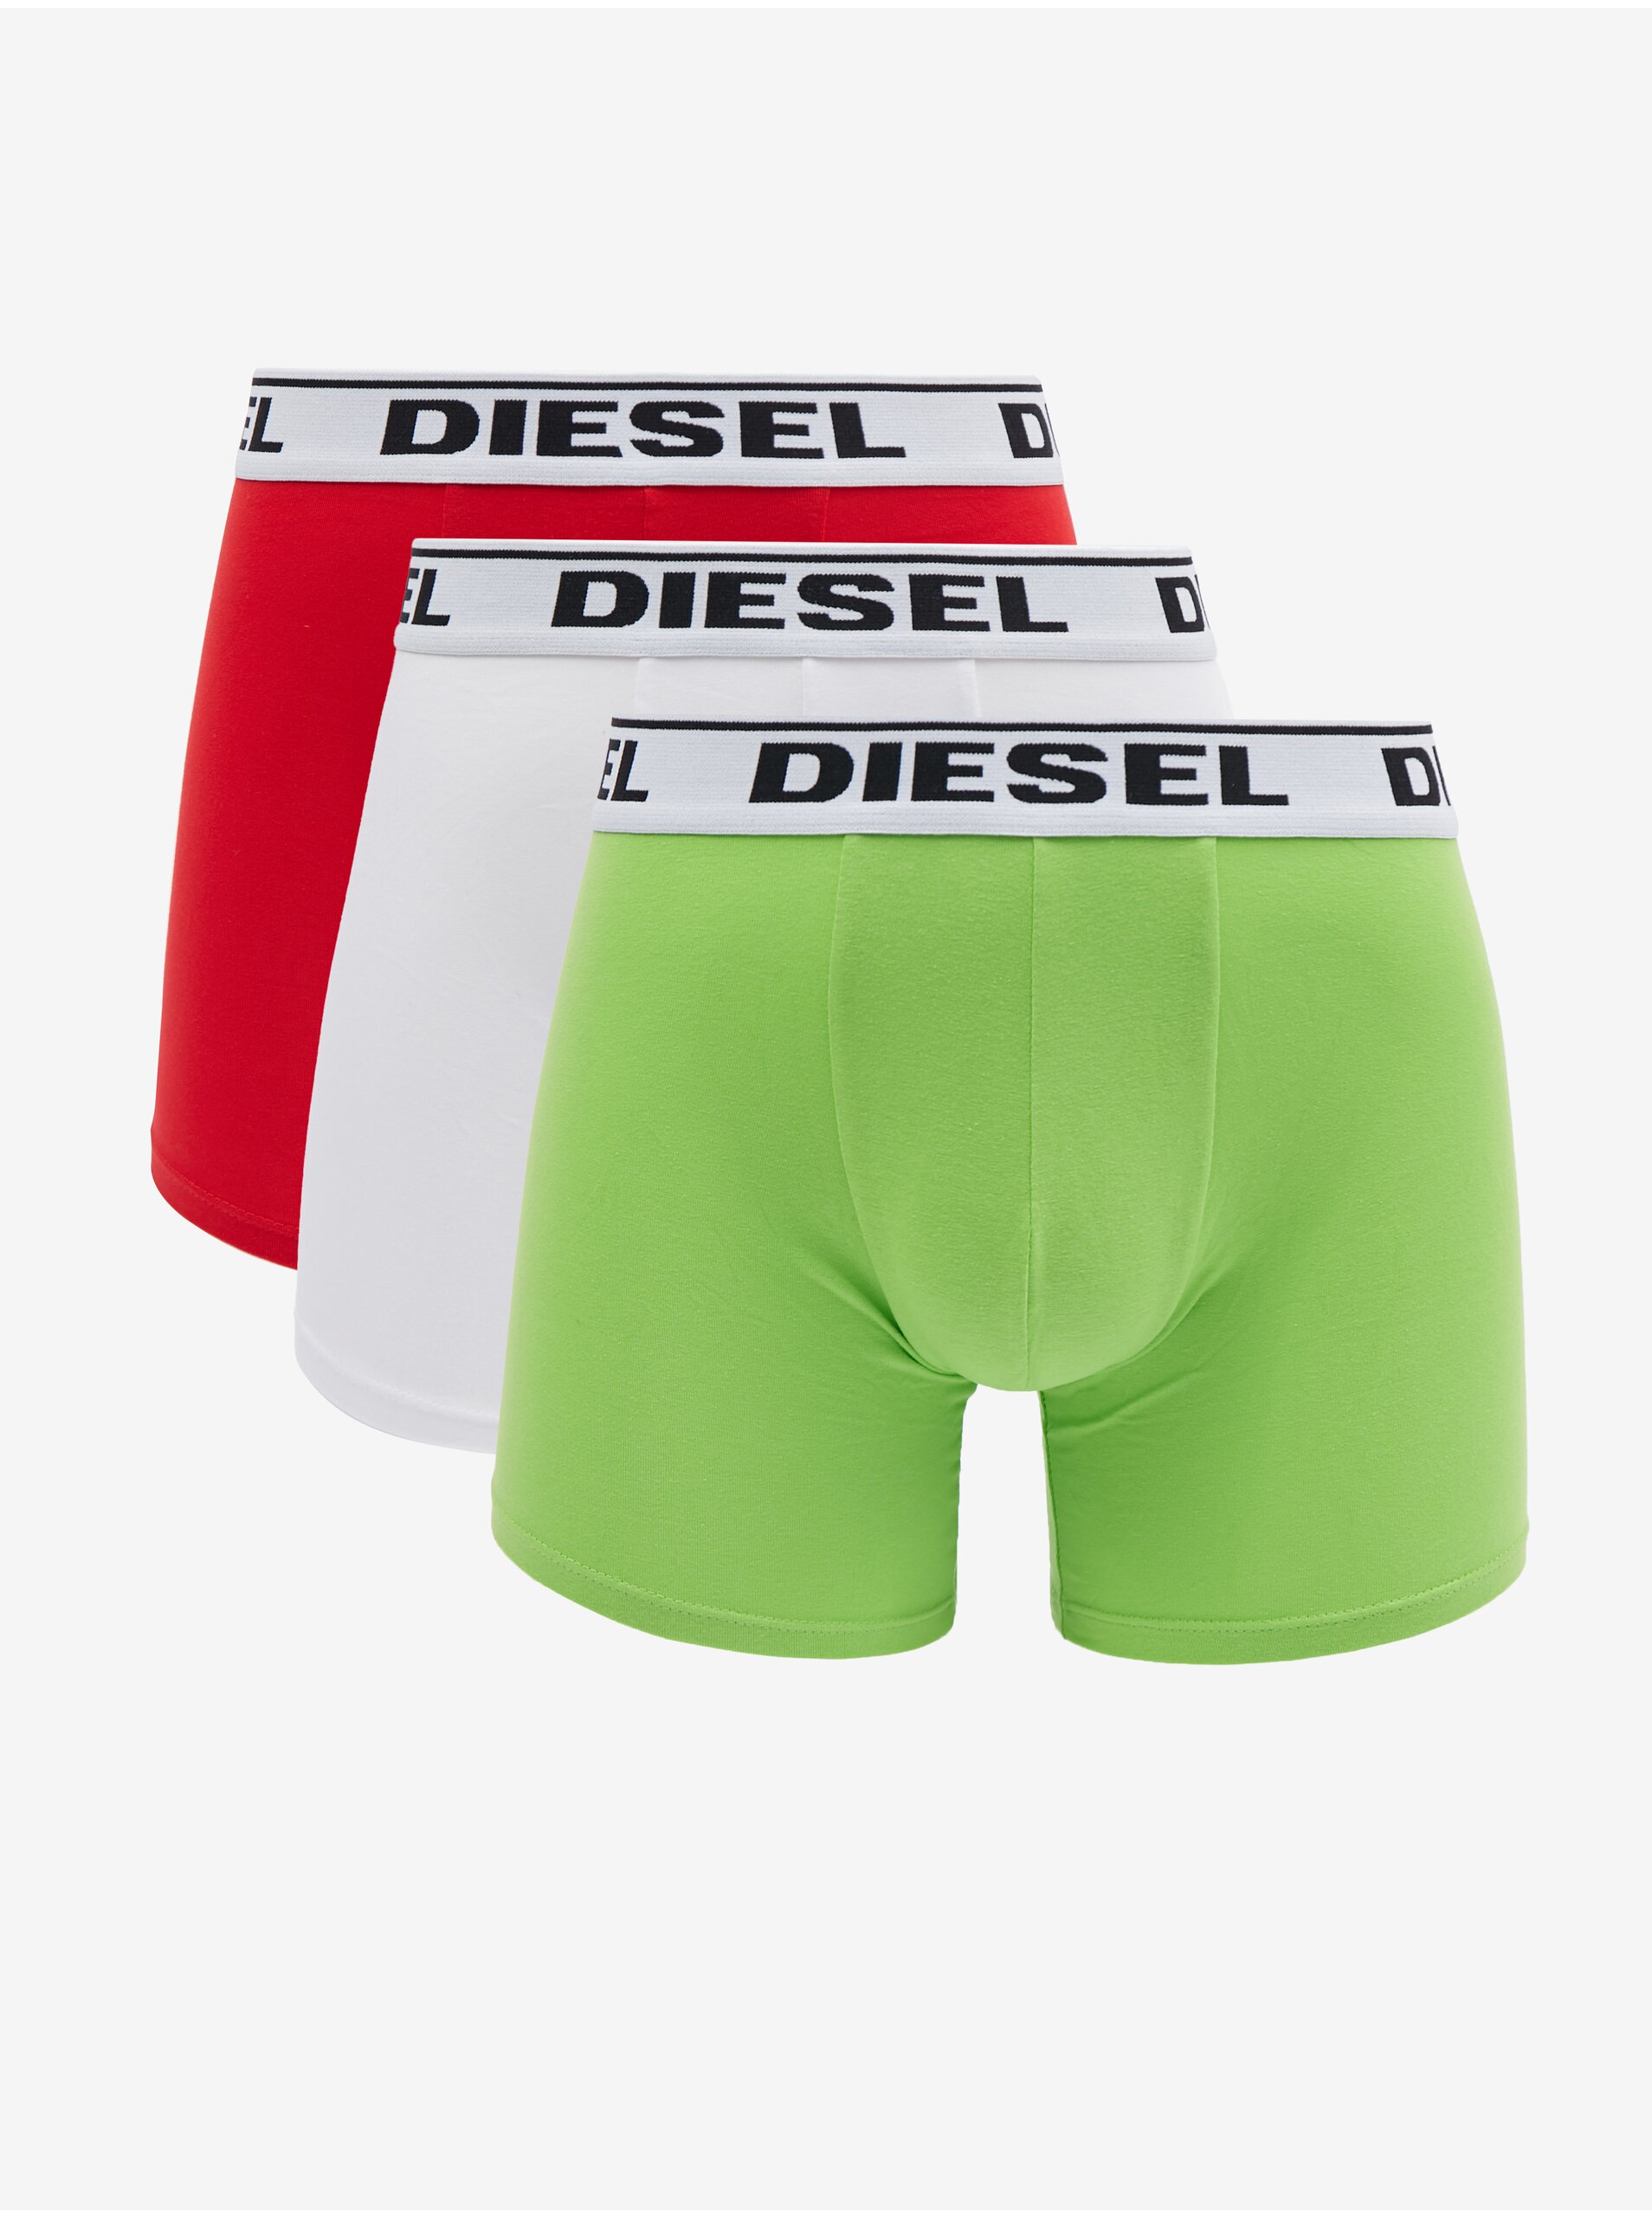 Lacno Súprava troch pánskych boxeriek vo svetlo zelenej, bielej a červenej farbe Diesel